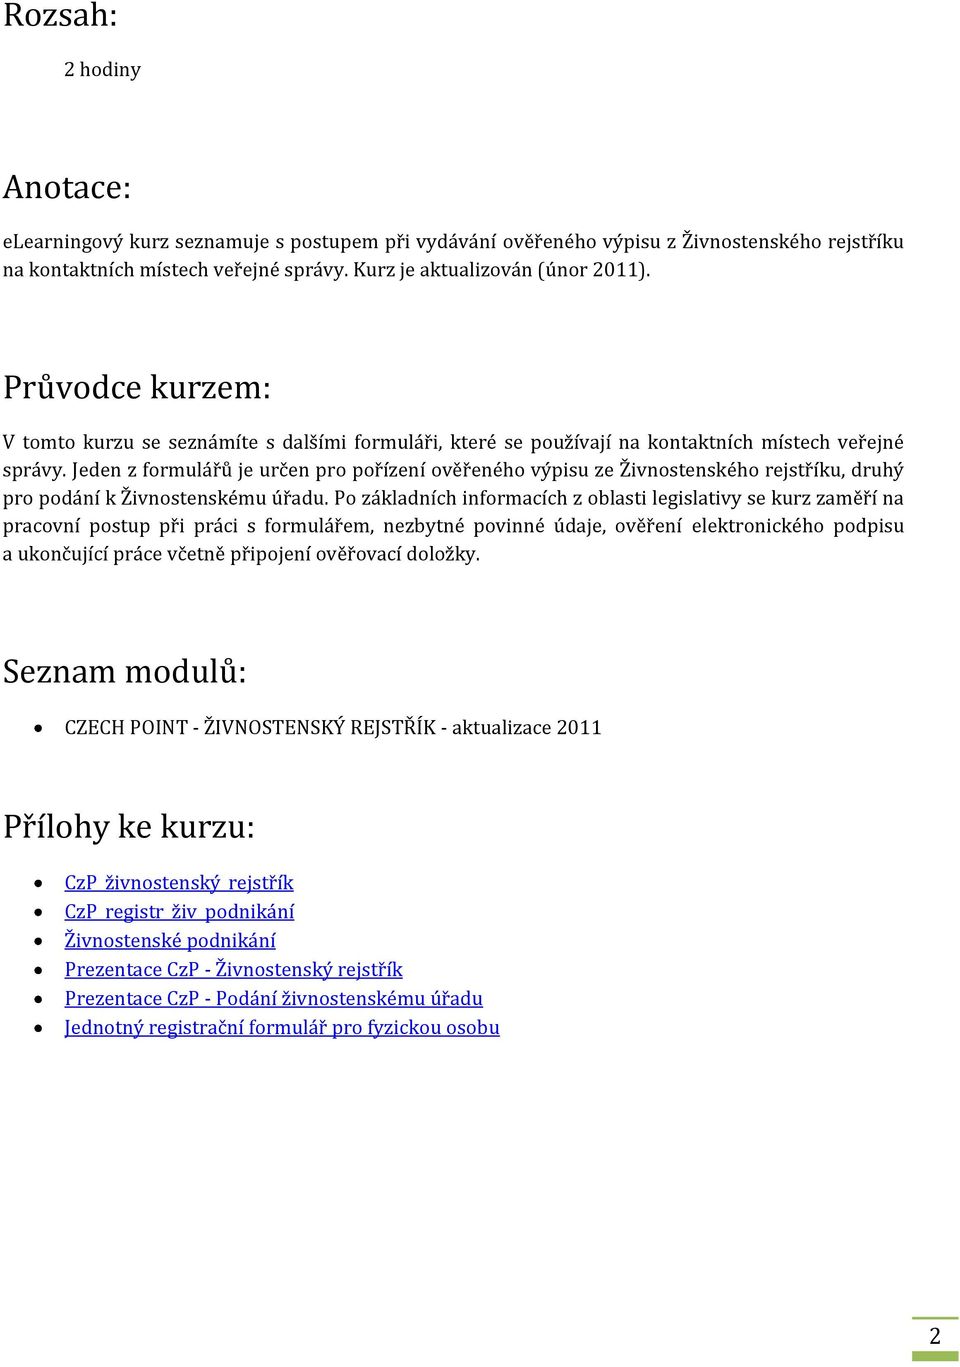 Czech POINT - Živnostenský rejstřík a podání živnostenskému úřadu -  aktualizace 2011 (egon) - PDF Stažení zdarma